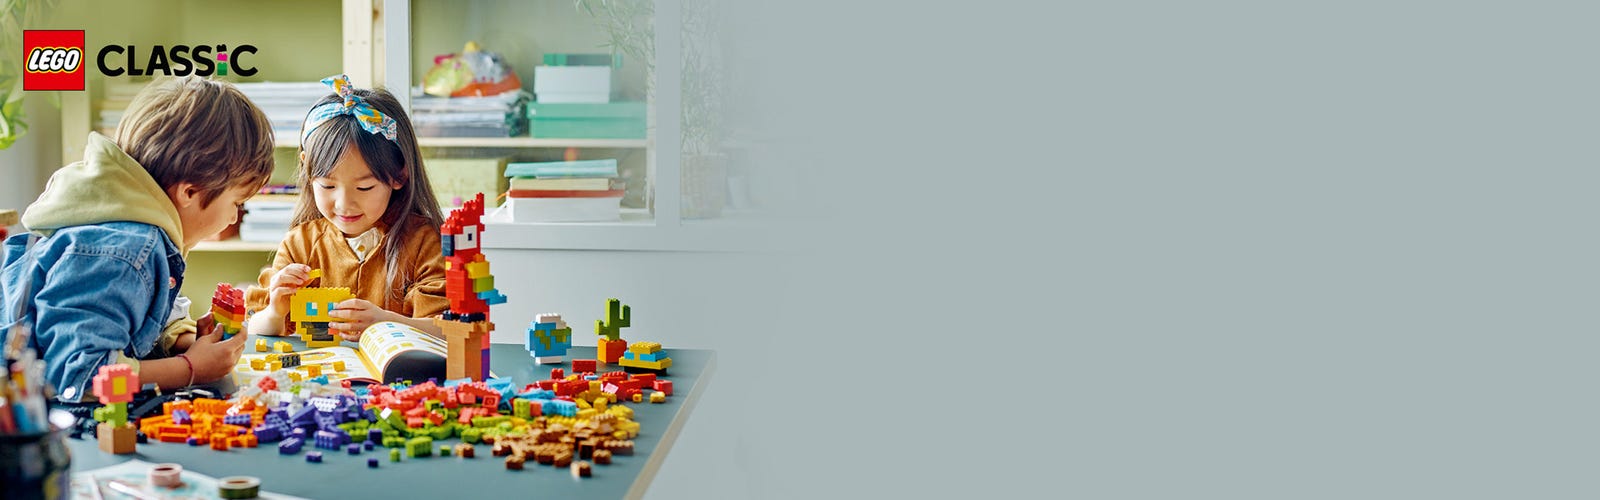 브릭 한꾸러미 11030 | 클래식 | Lego® Shop Kr